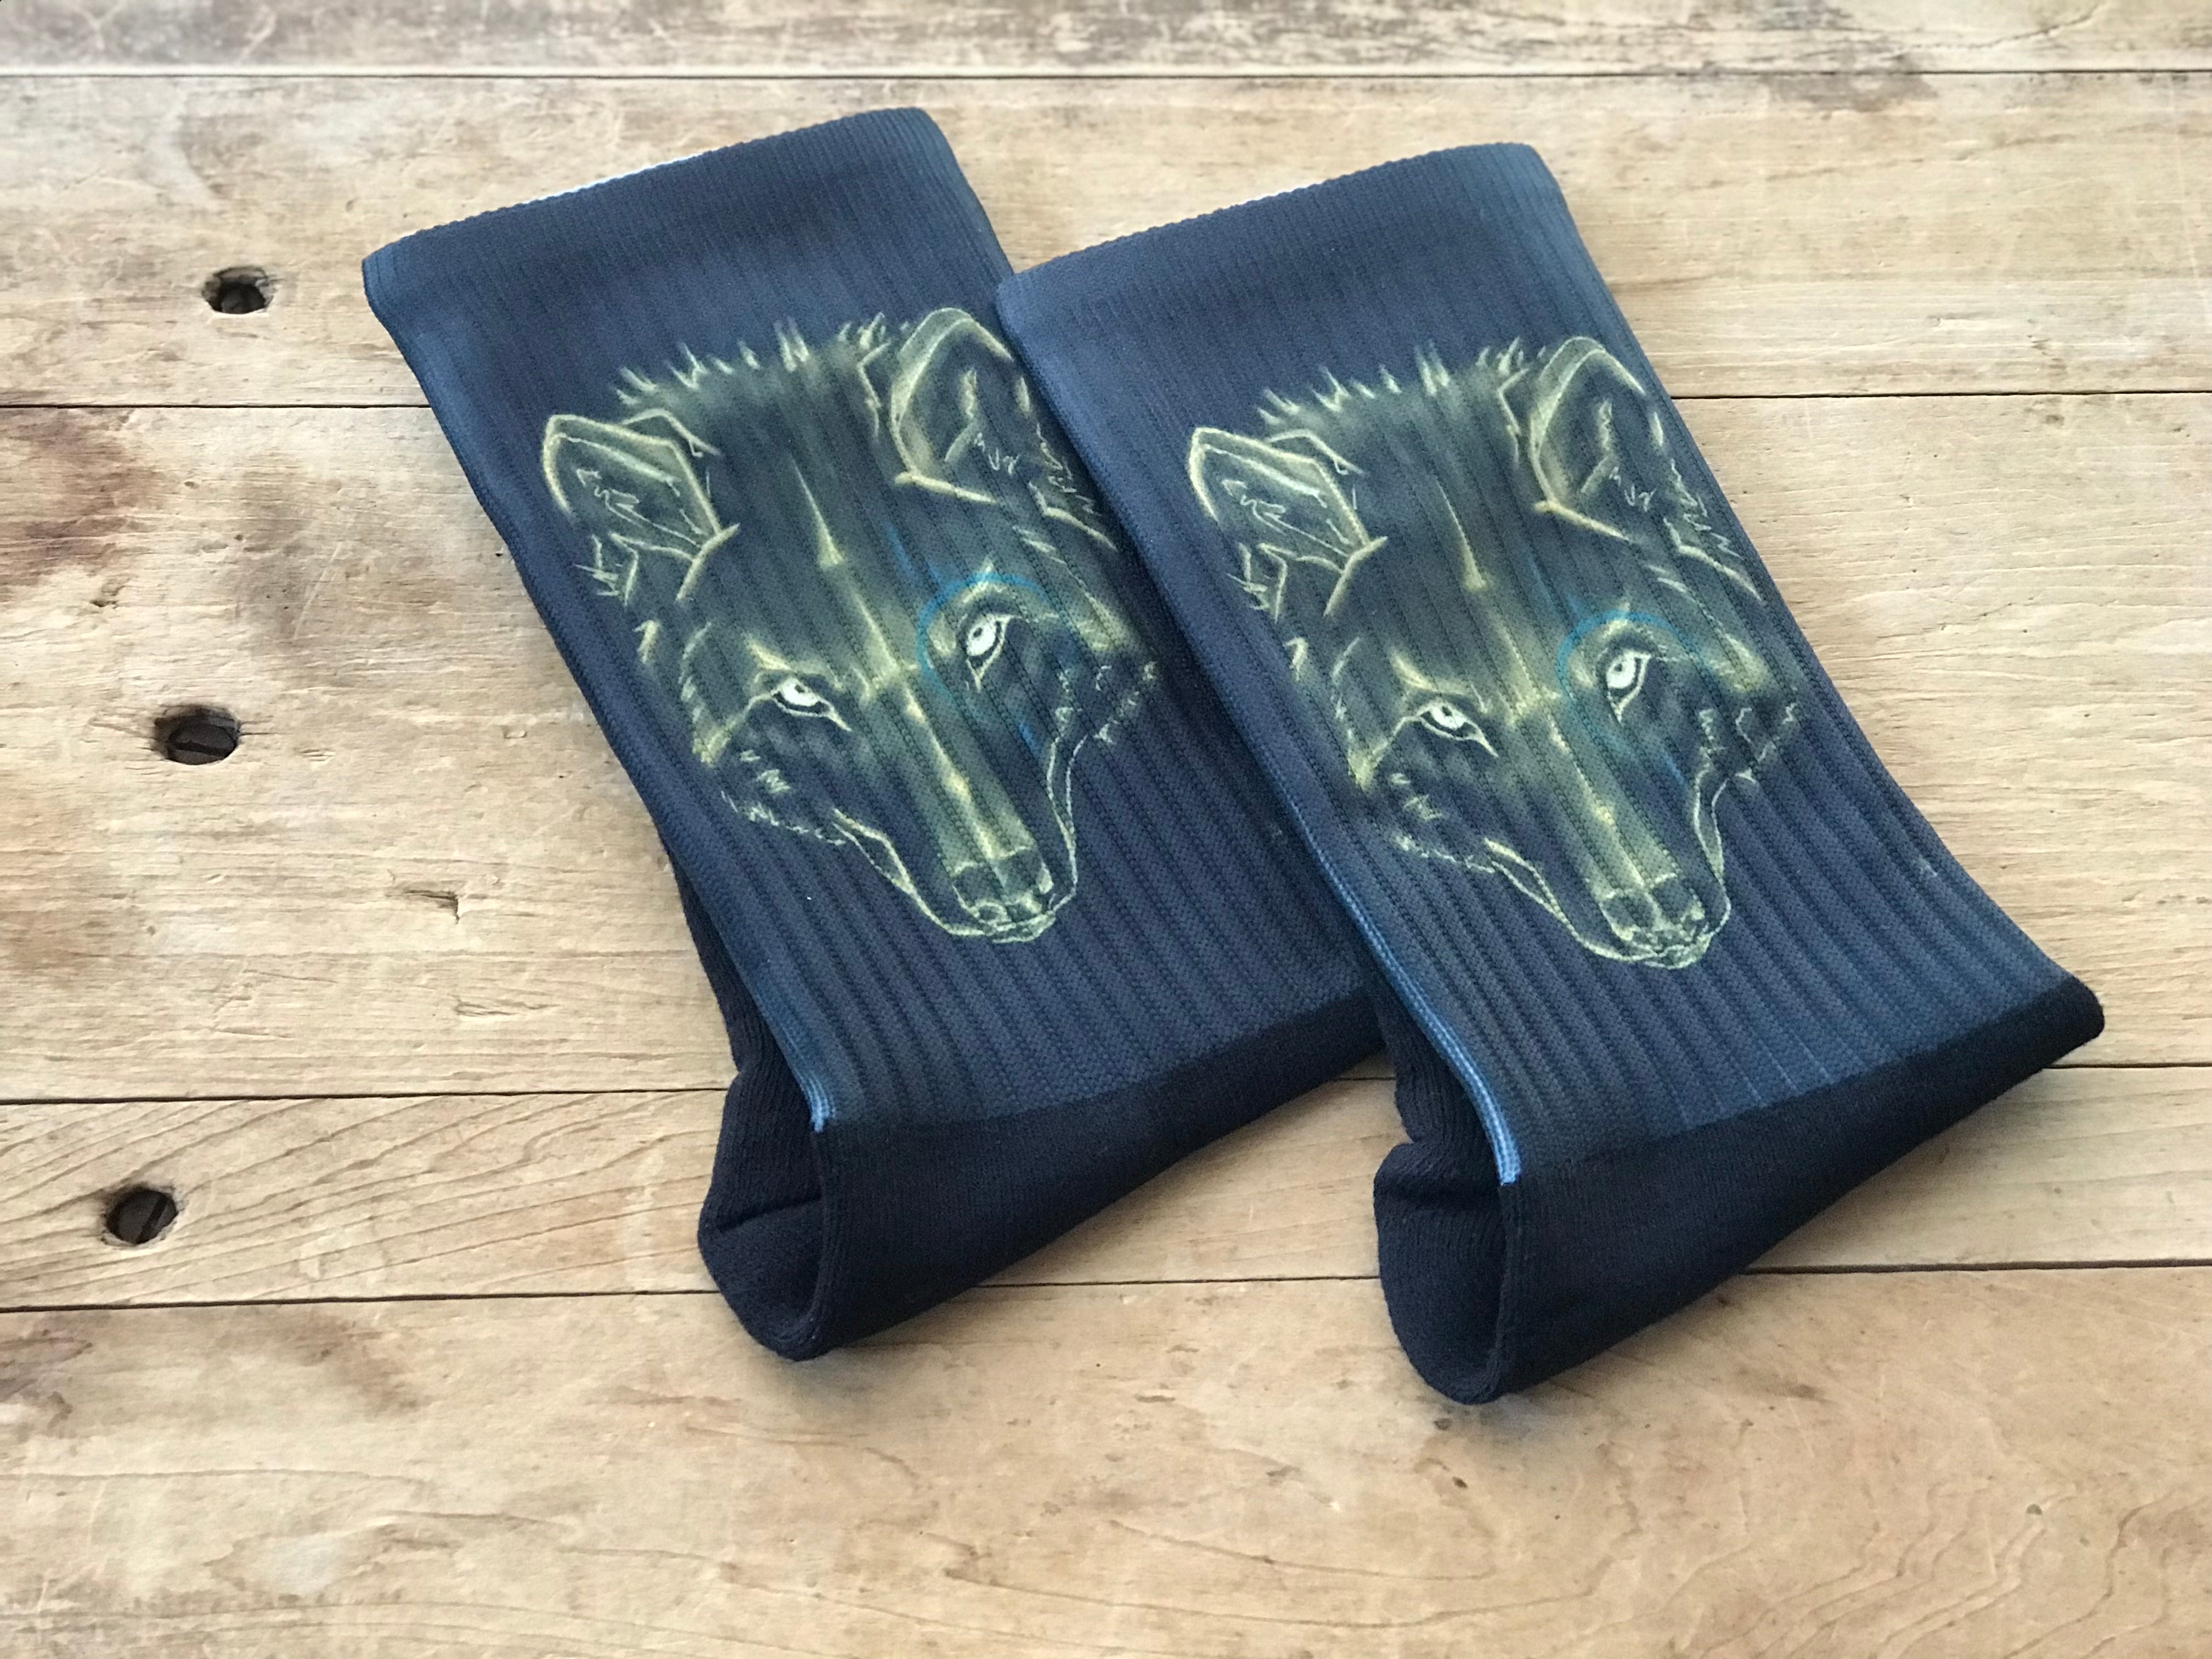 “FENRIR" His & Hers Socks